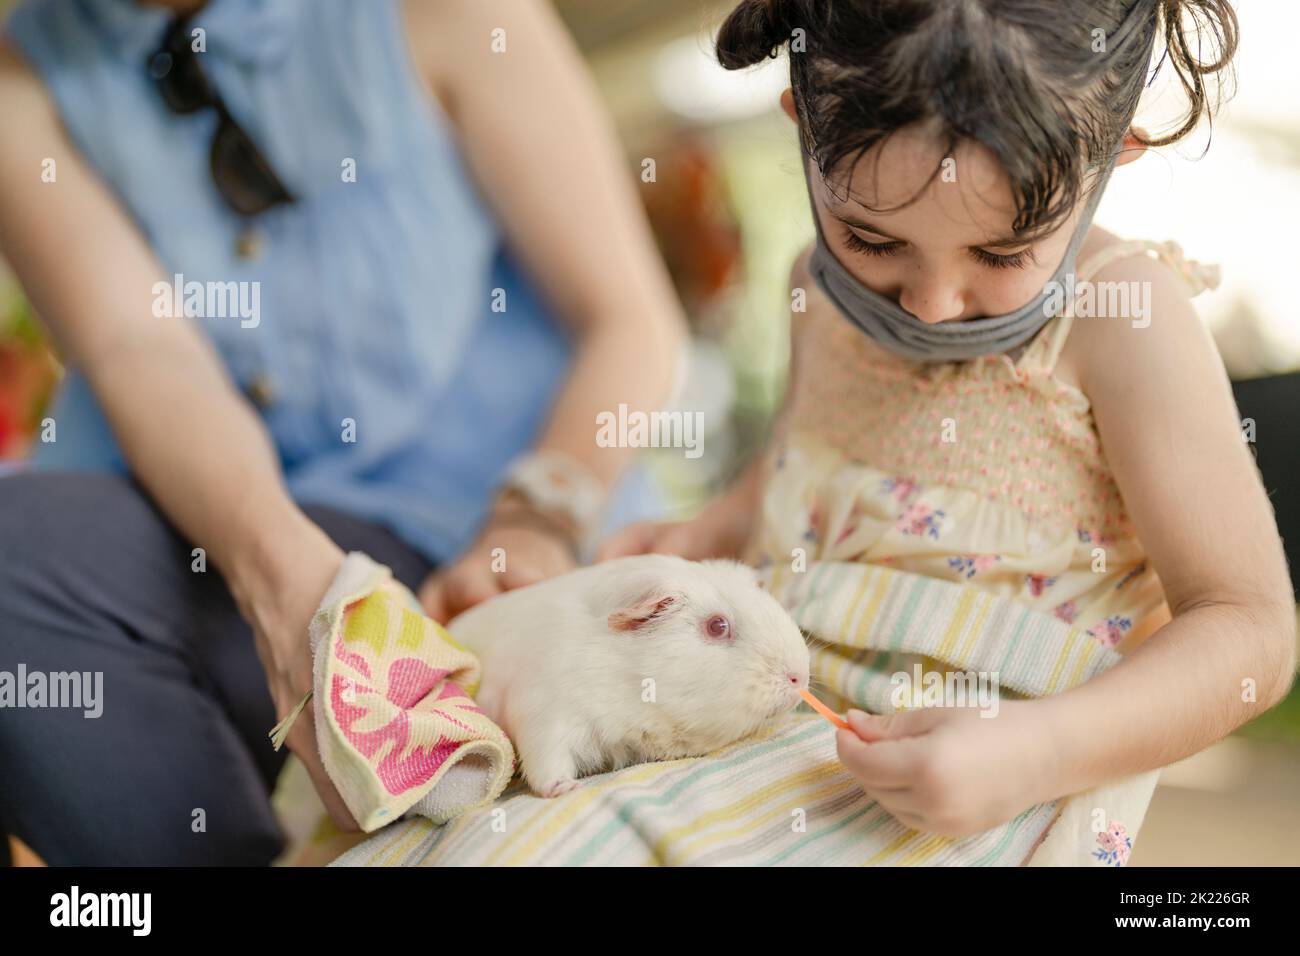 fille de 4 ans portant un masque nourrissant un cobaye Banque D'Images